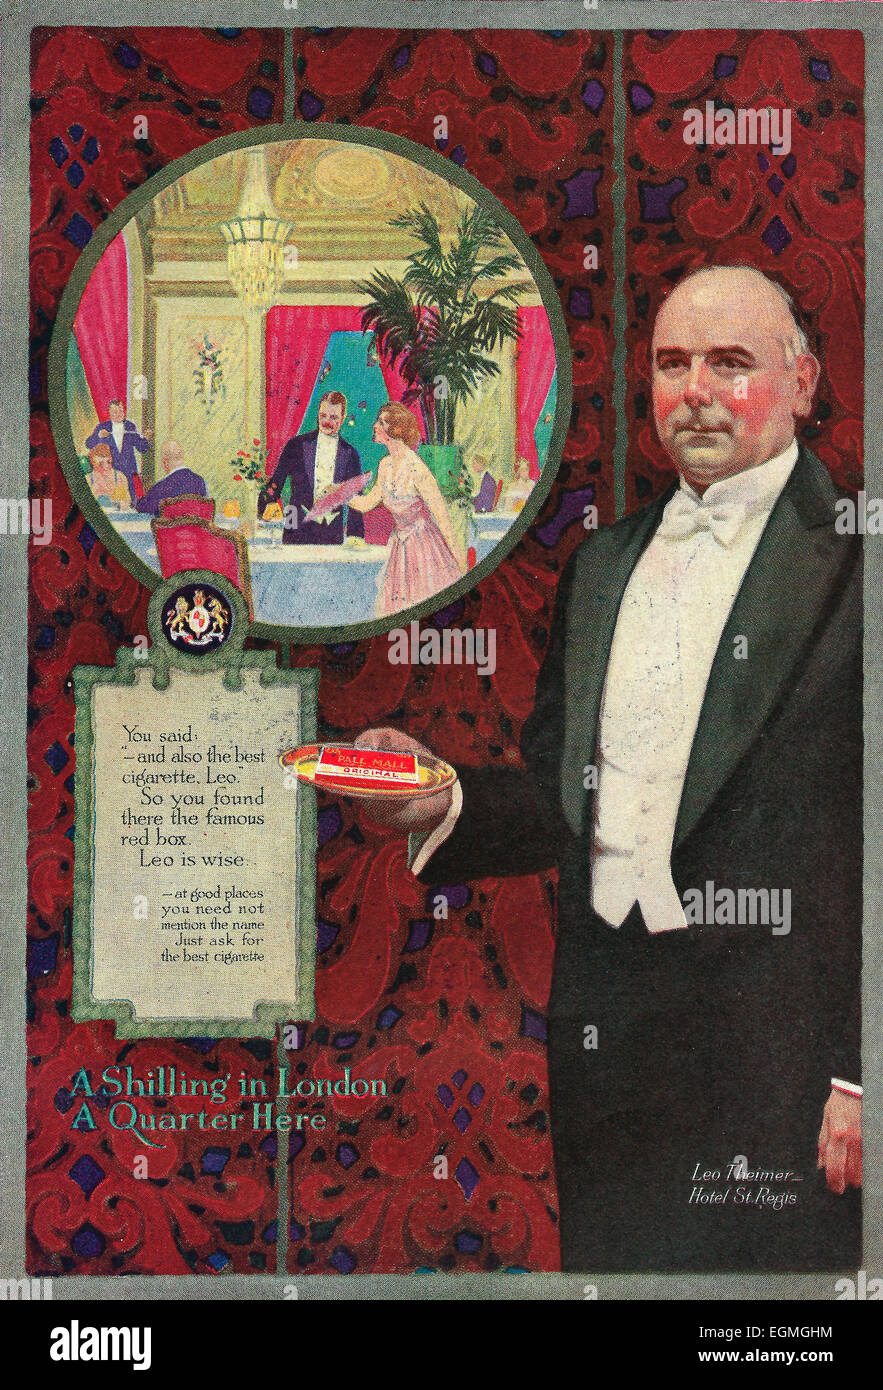 Pall Mall cigarette publicité, 1916 Banque D'Images